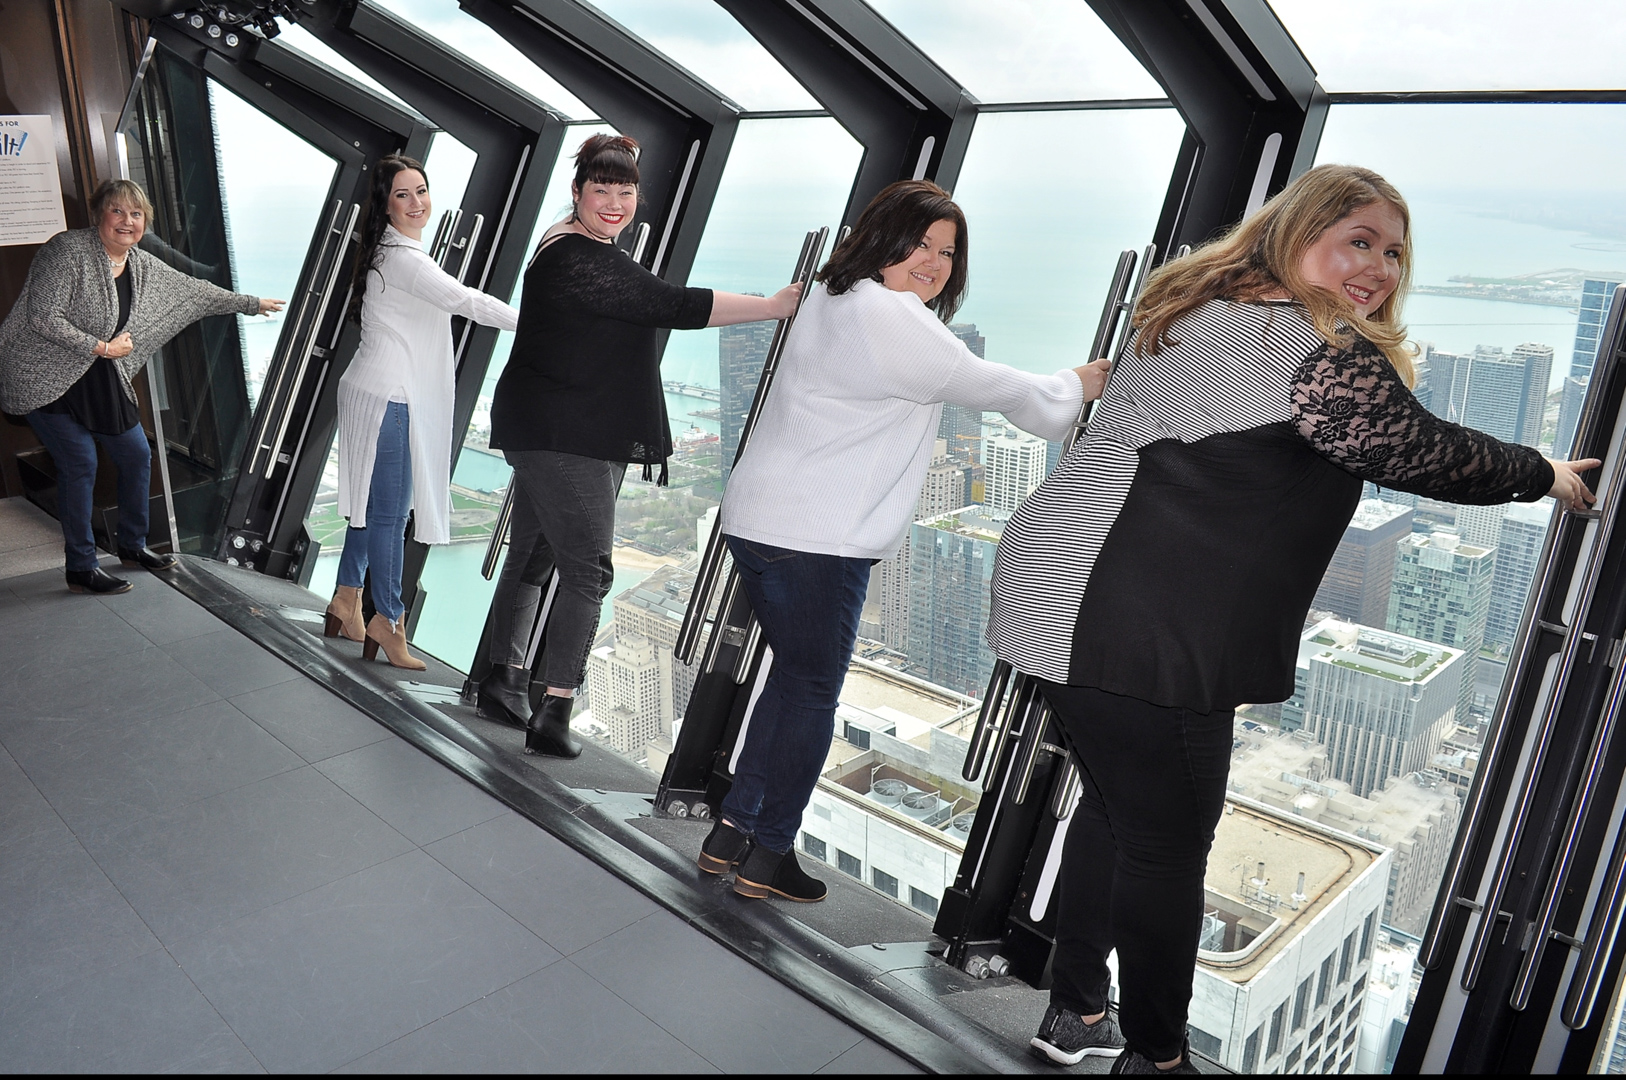 360 chicago observation deck